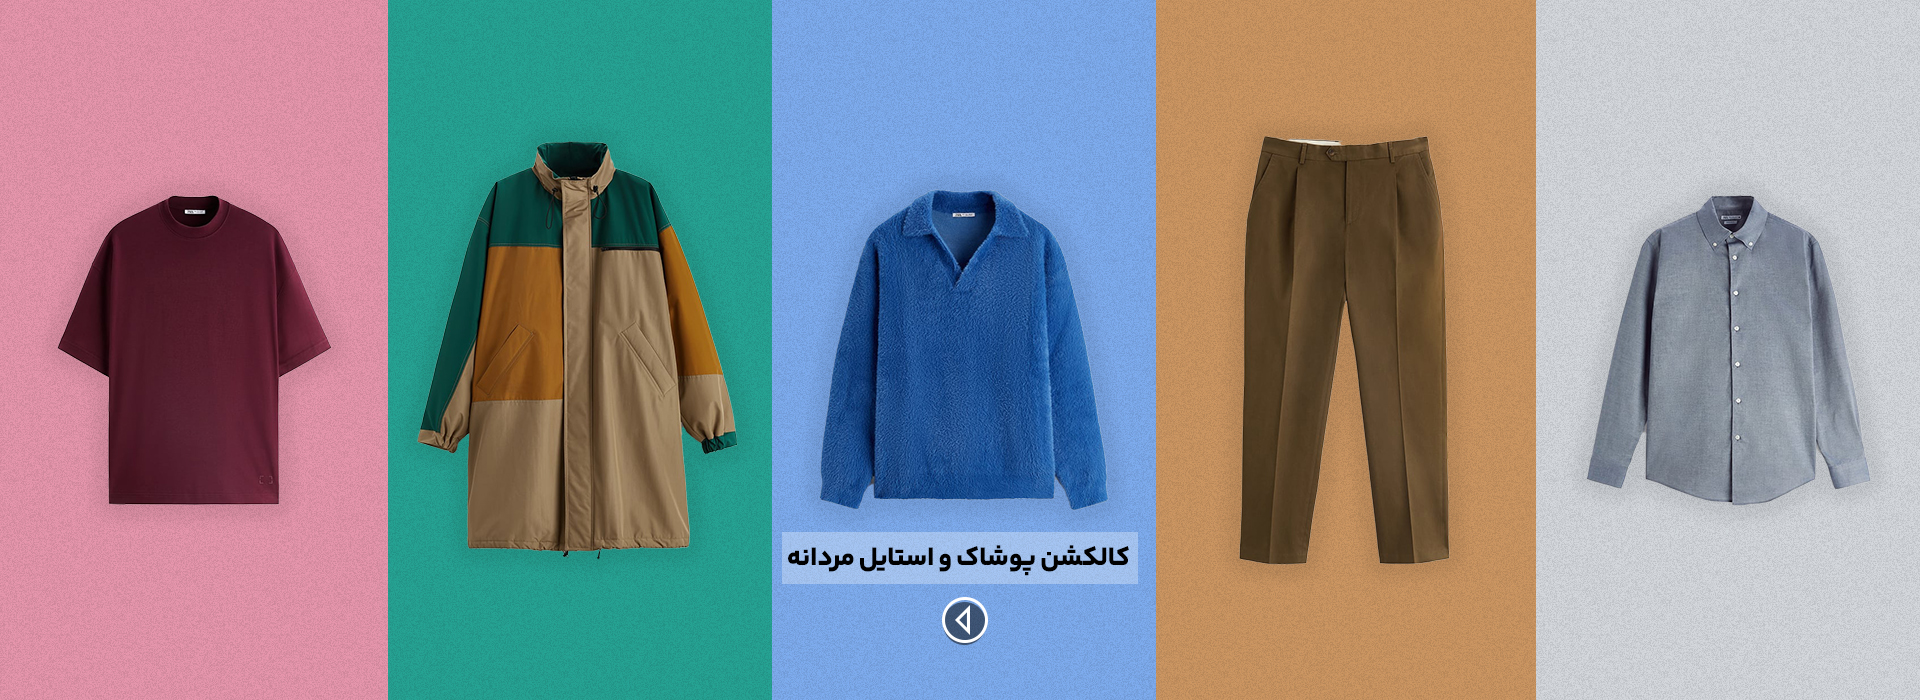 خرید پوشاک و لباس مردانه از ترکیه